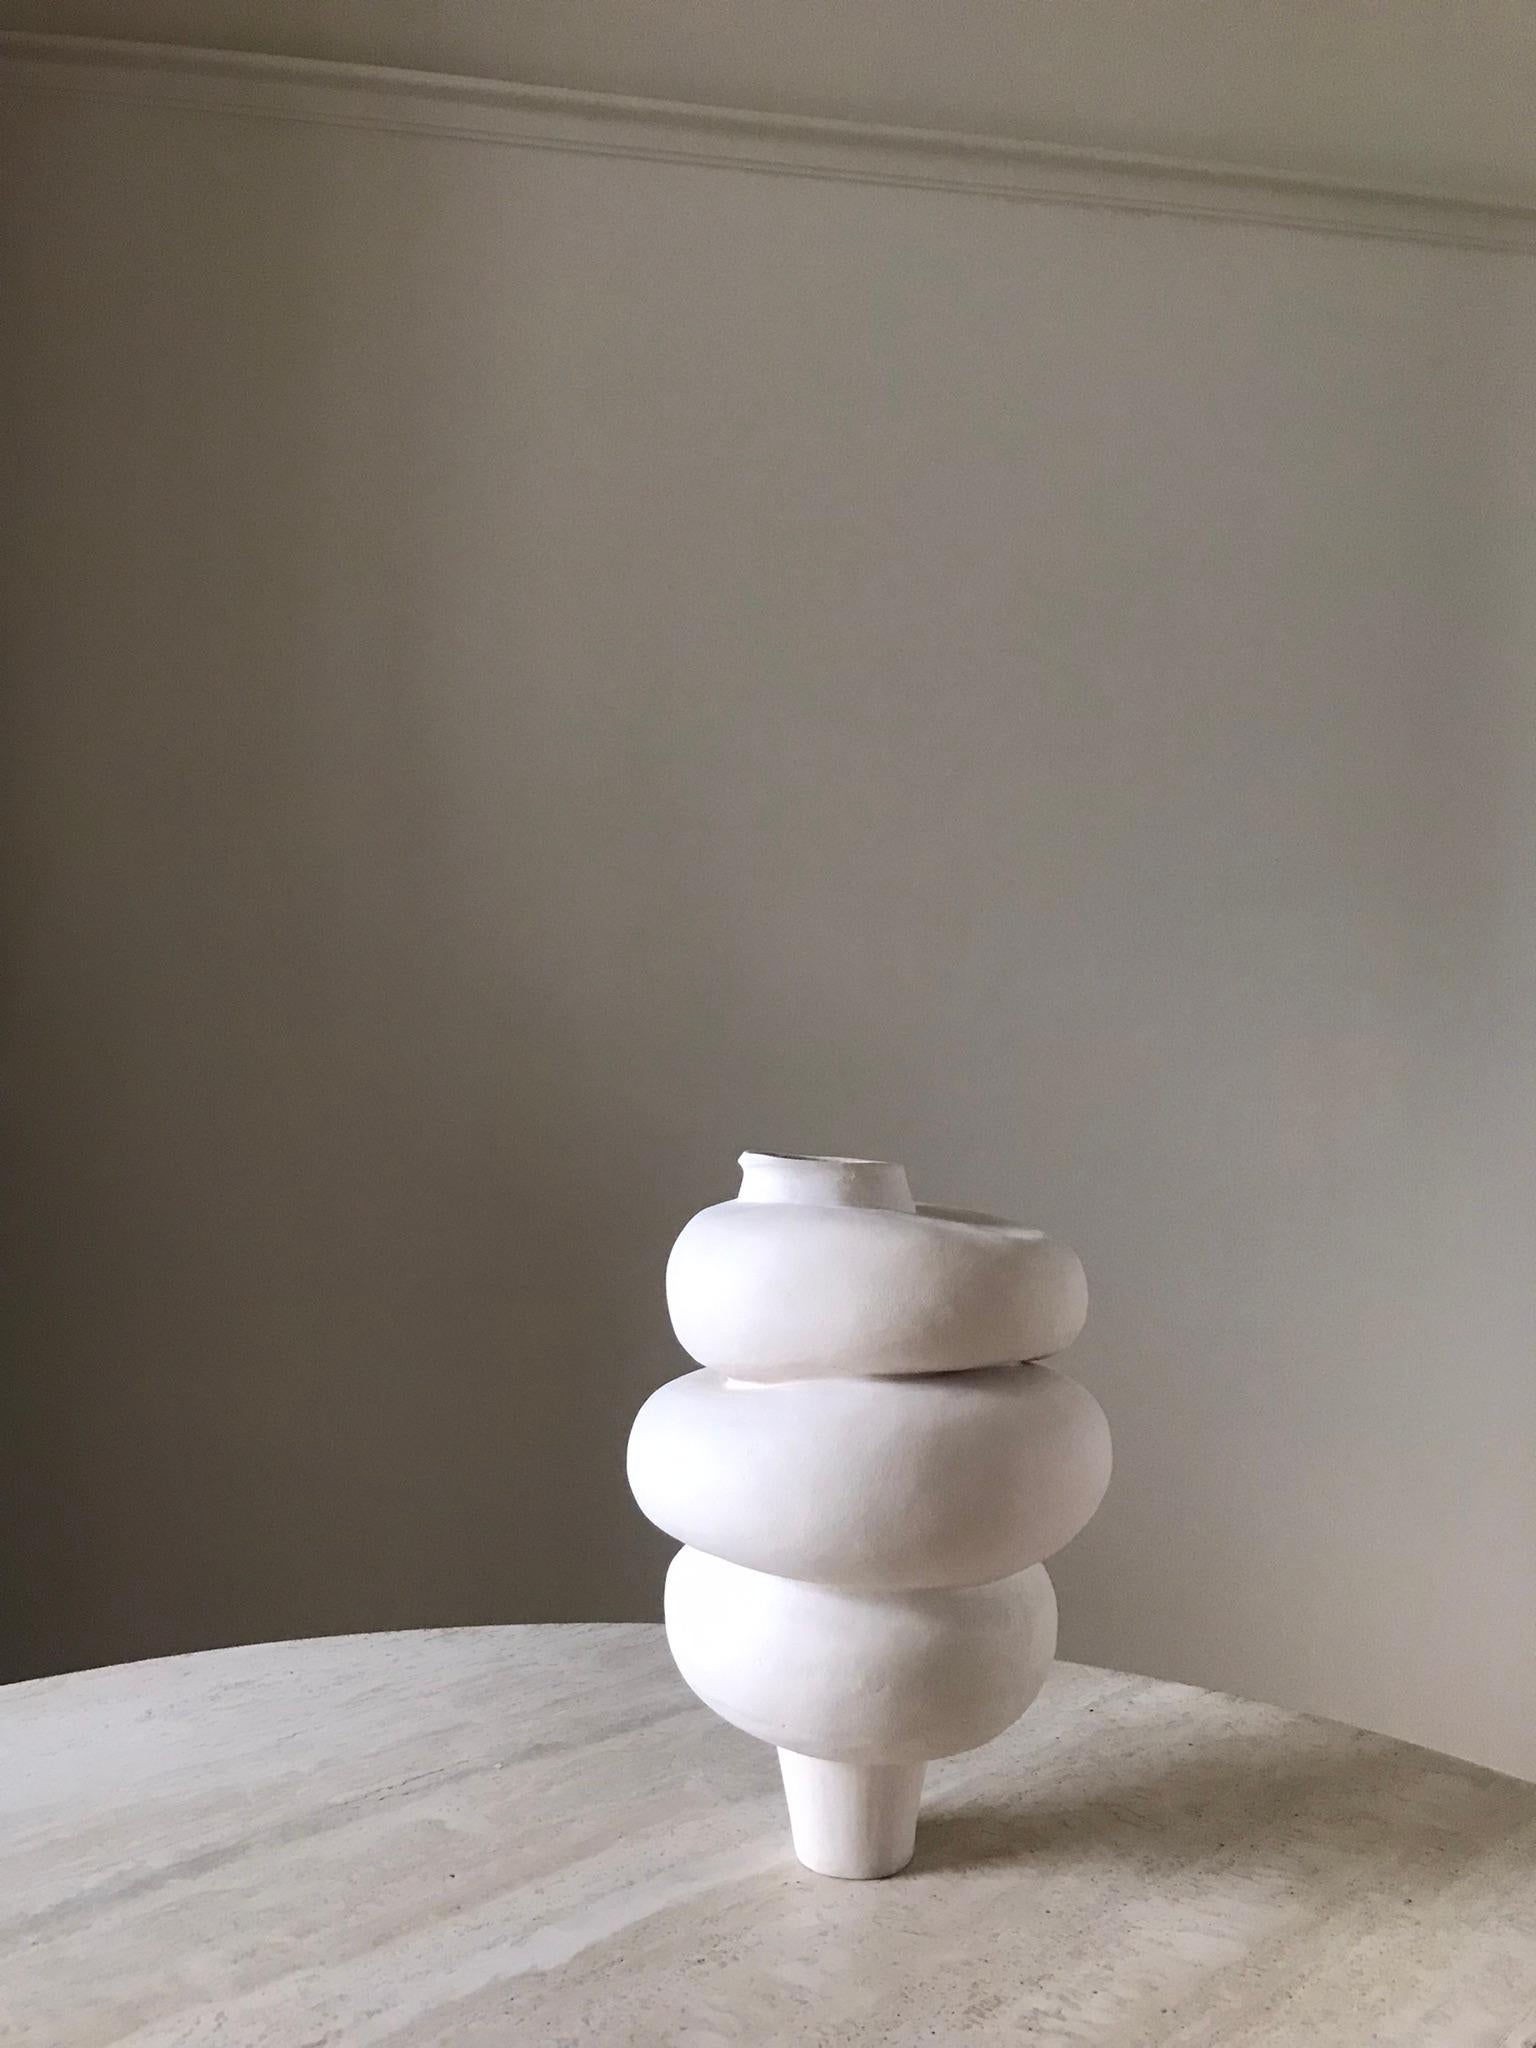 Néerlandais Art céramique sculpturale contemporaine néerlandaise Modder in Touch par Françoise Jeffrey en vente